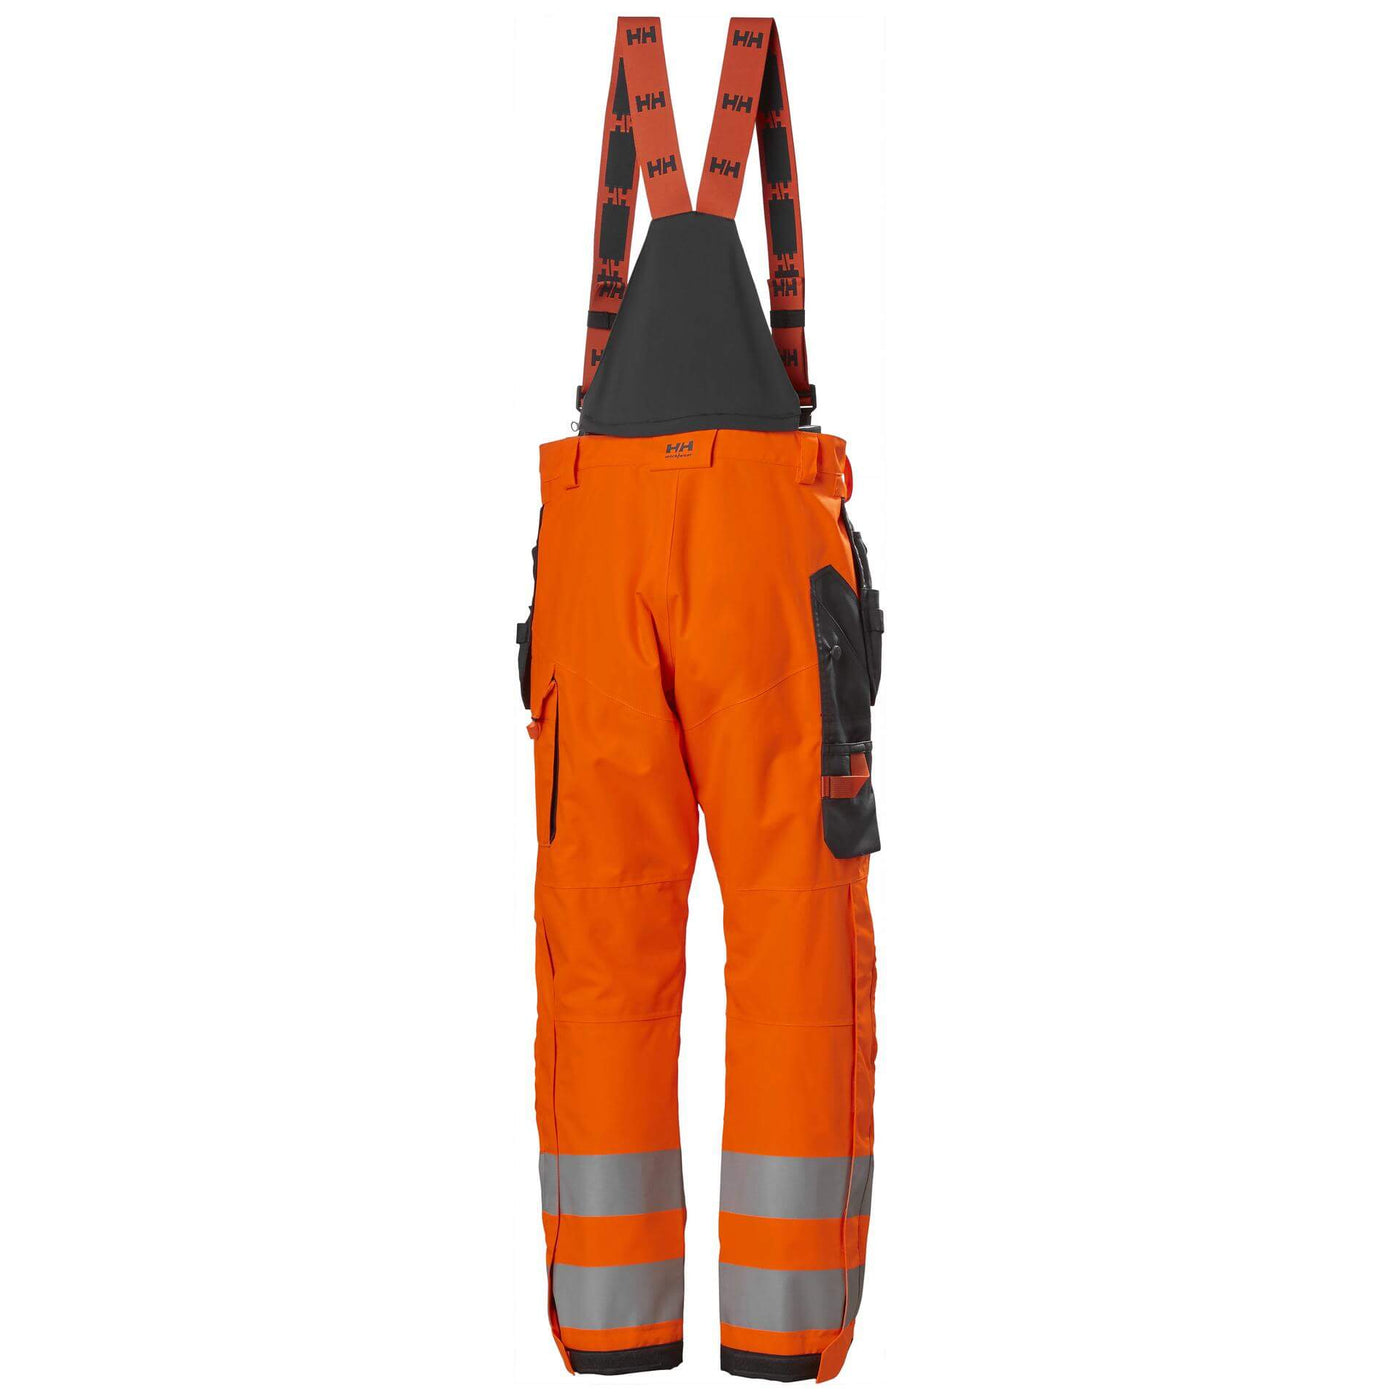 Helly Hansen Alna 2.0 Hi Vis Waterproof Shell Construction Bib and Brace Trousers Class 2 Orange/Ebony 2 Rear #colour_orange-ebony